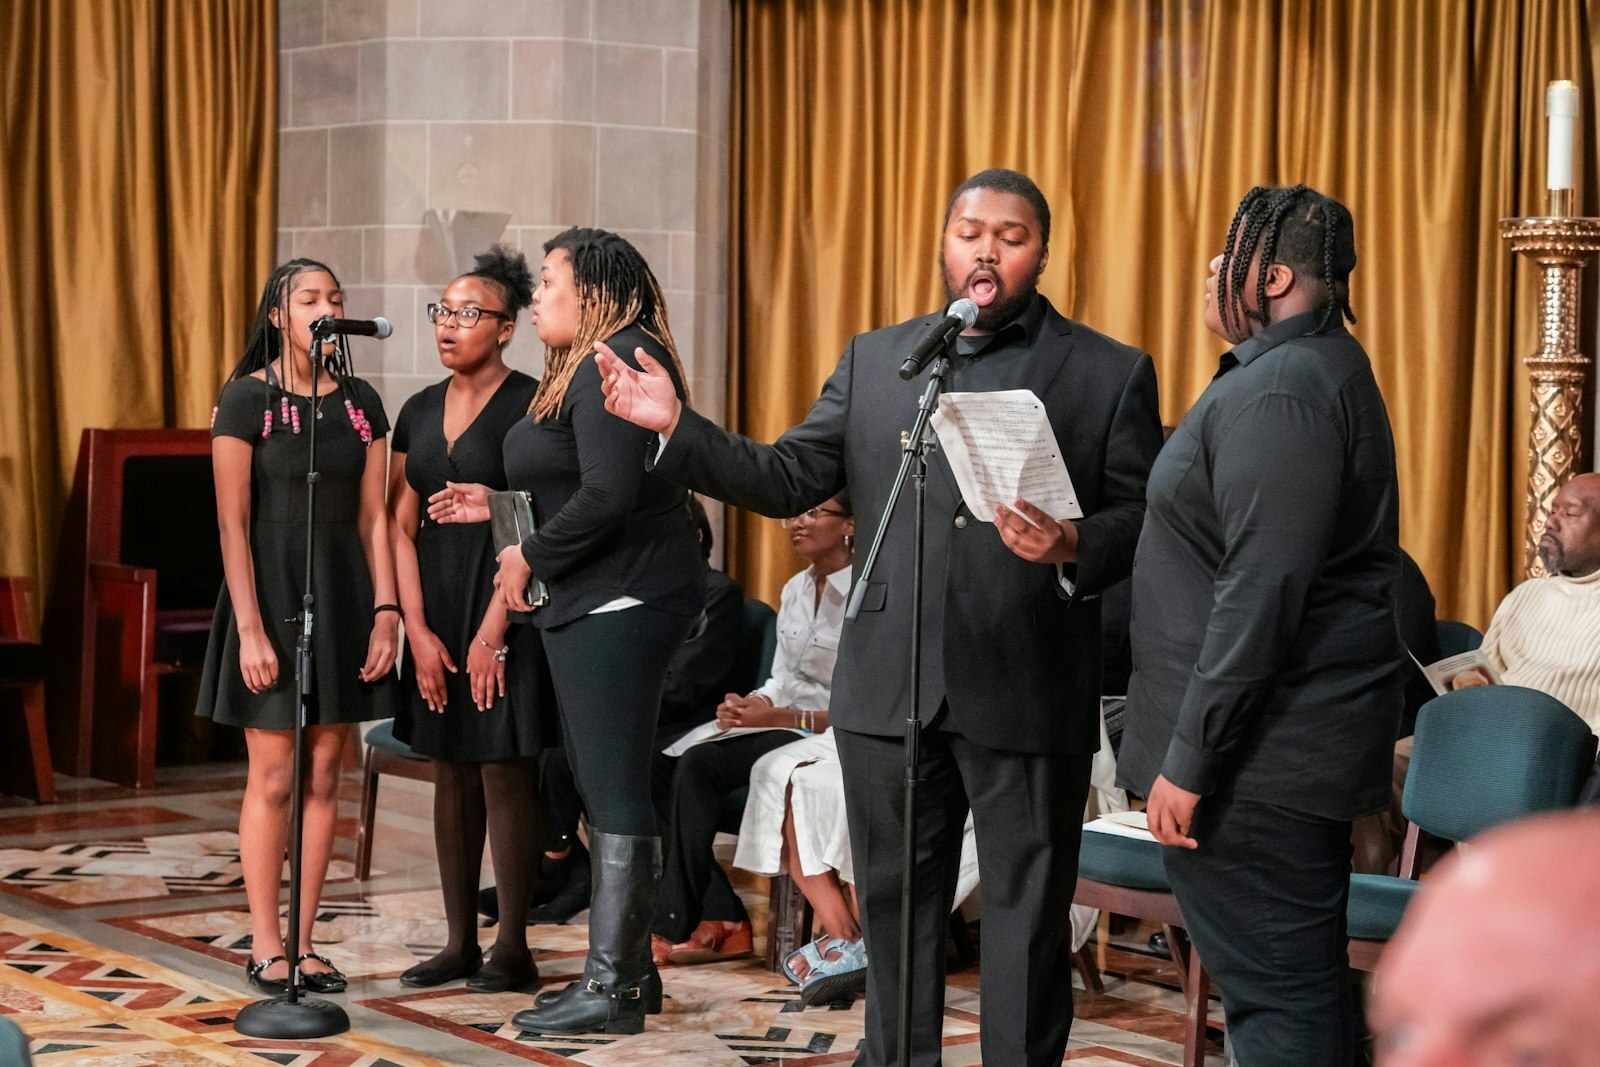 El coro del Obispo Thomas Gumbleton canta durante su Misa, en honor a todos sus años de servicio en la ciudad de Detroit y a la comunidad católica negra.